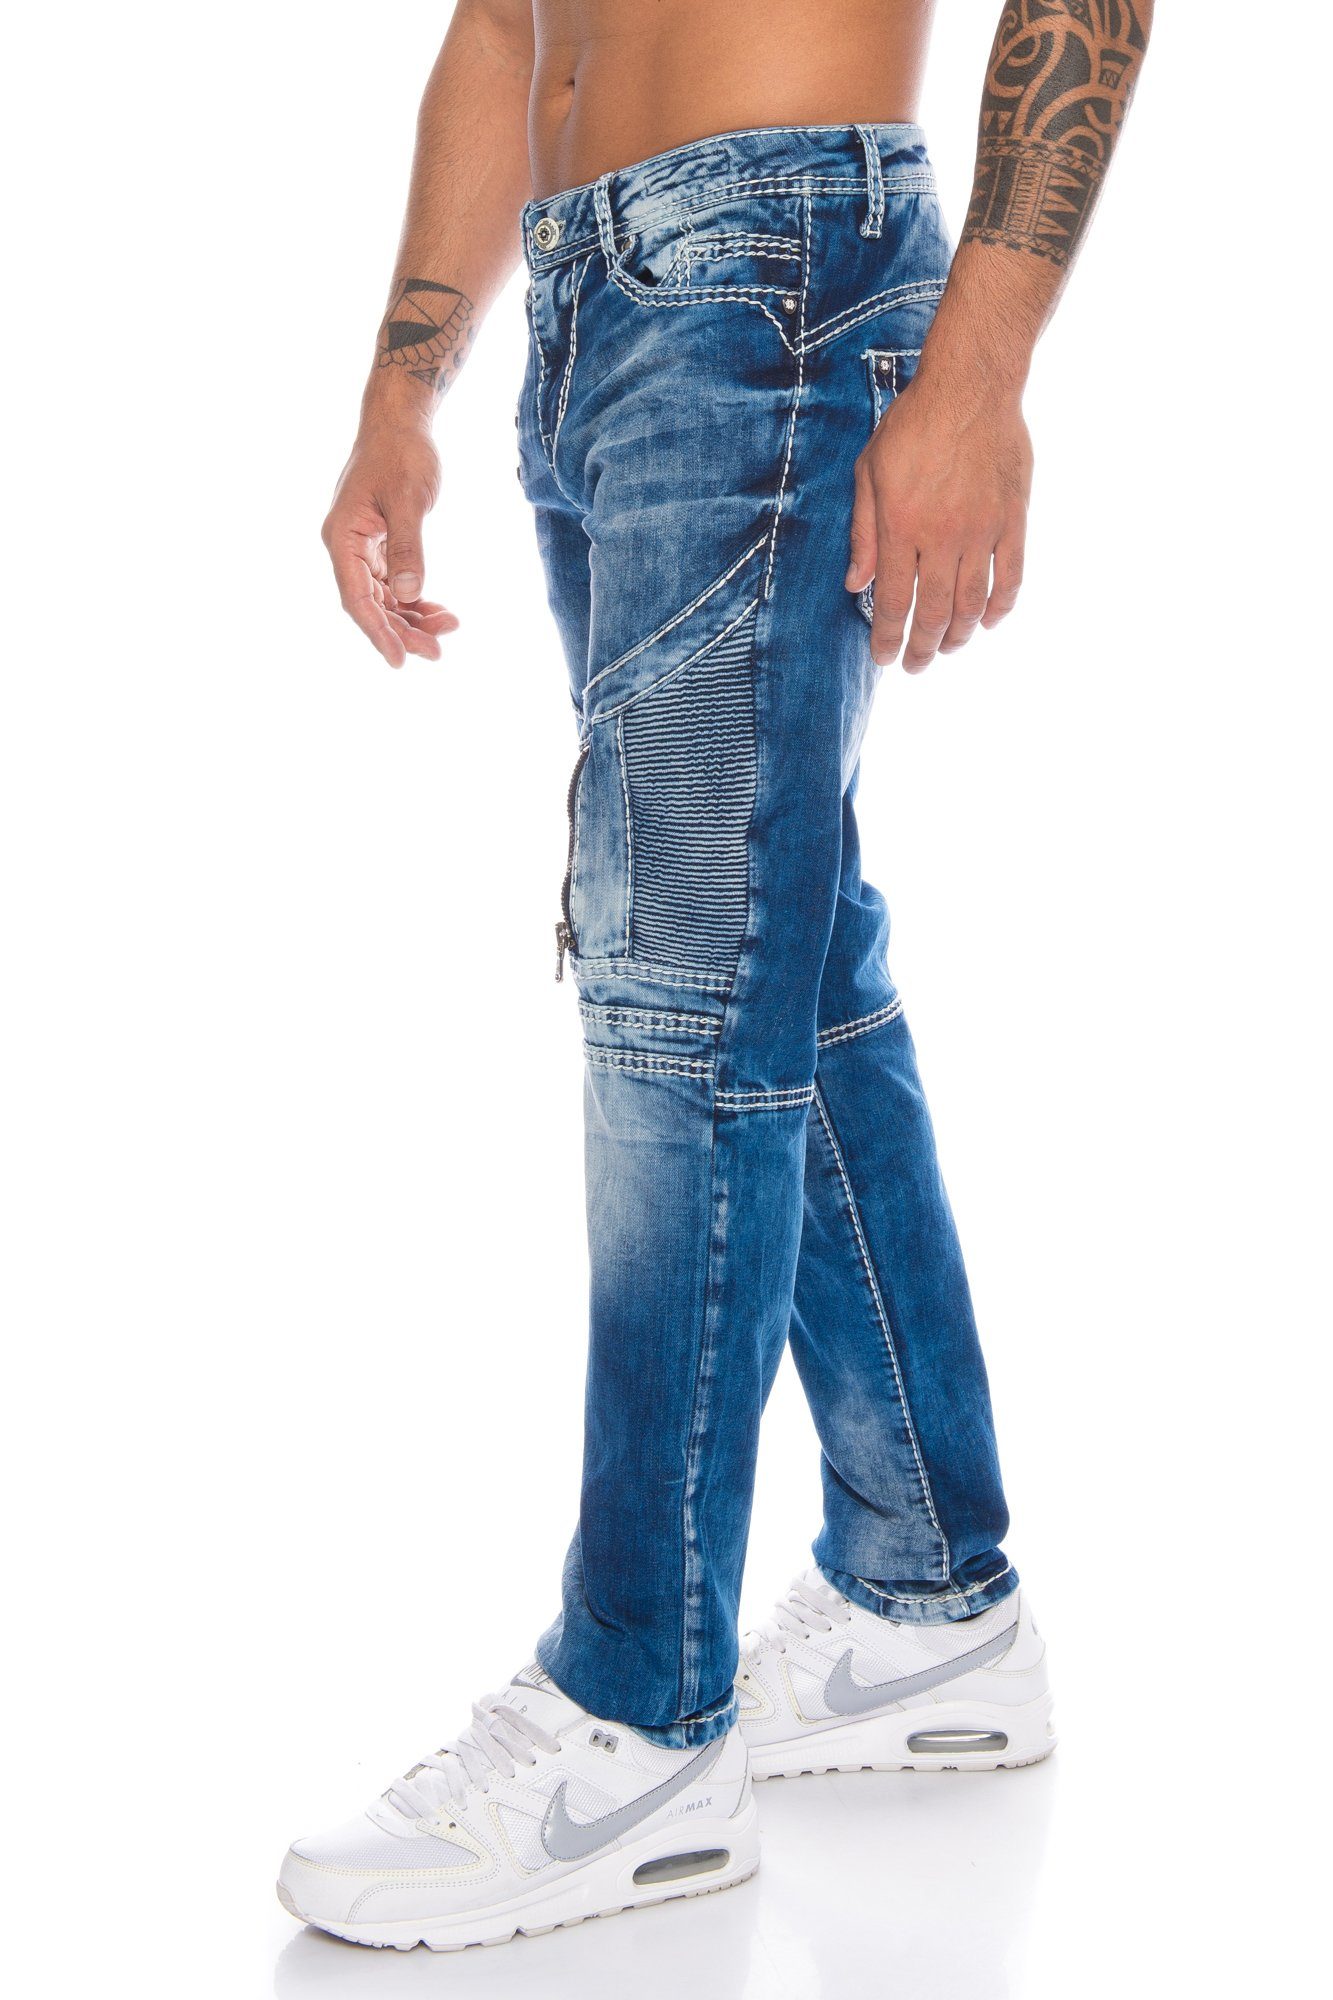 & Slim-fit-Jeans Hose und Jeans Zippern mit weiße Baxx Herren Zierreißverschlüsse Kontrastnähte Cipo Dicke